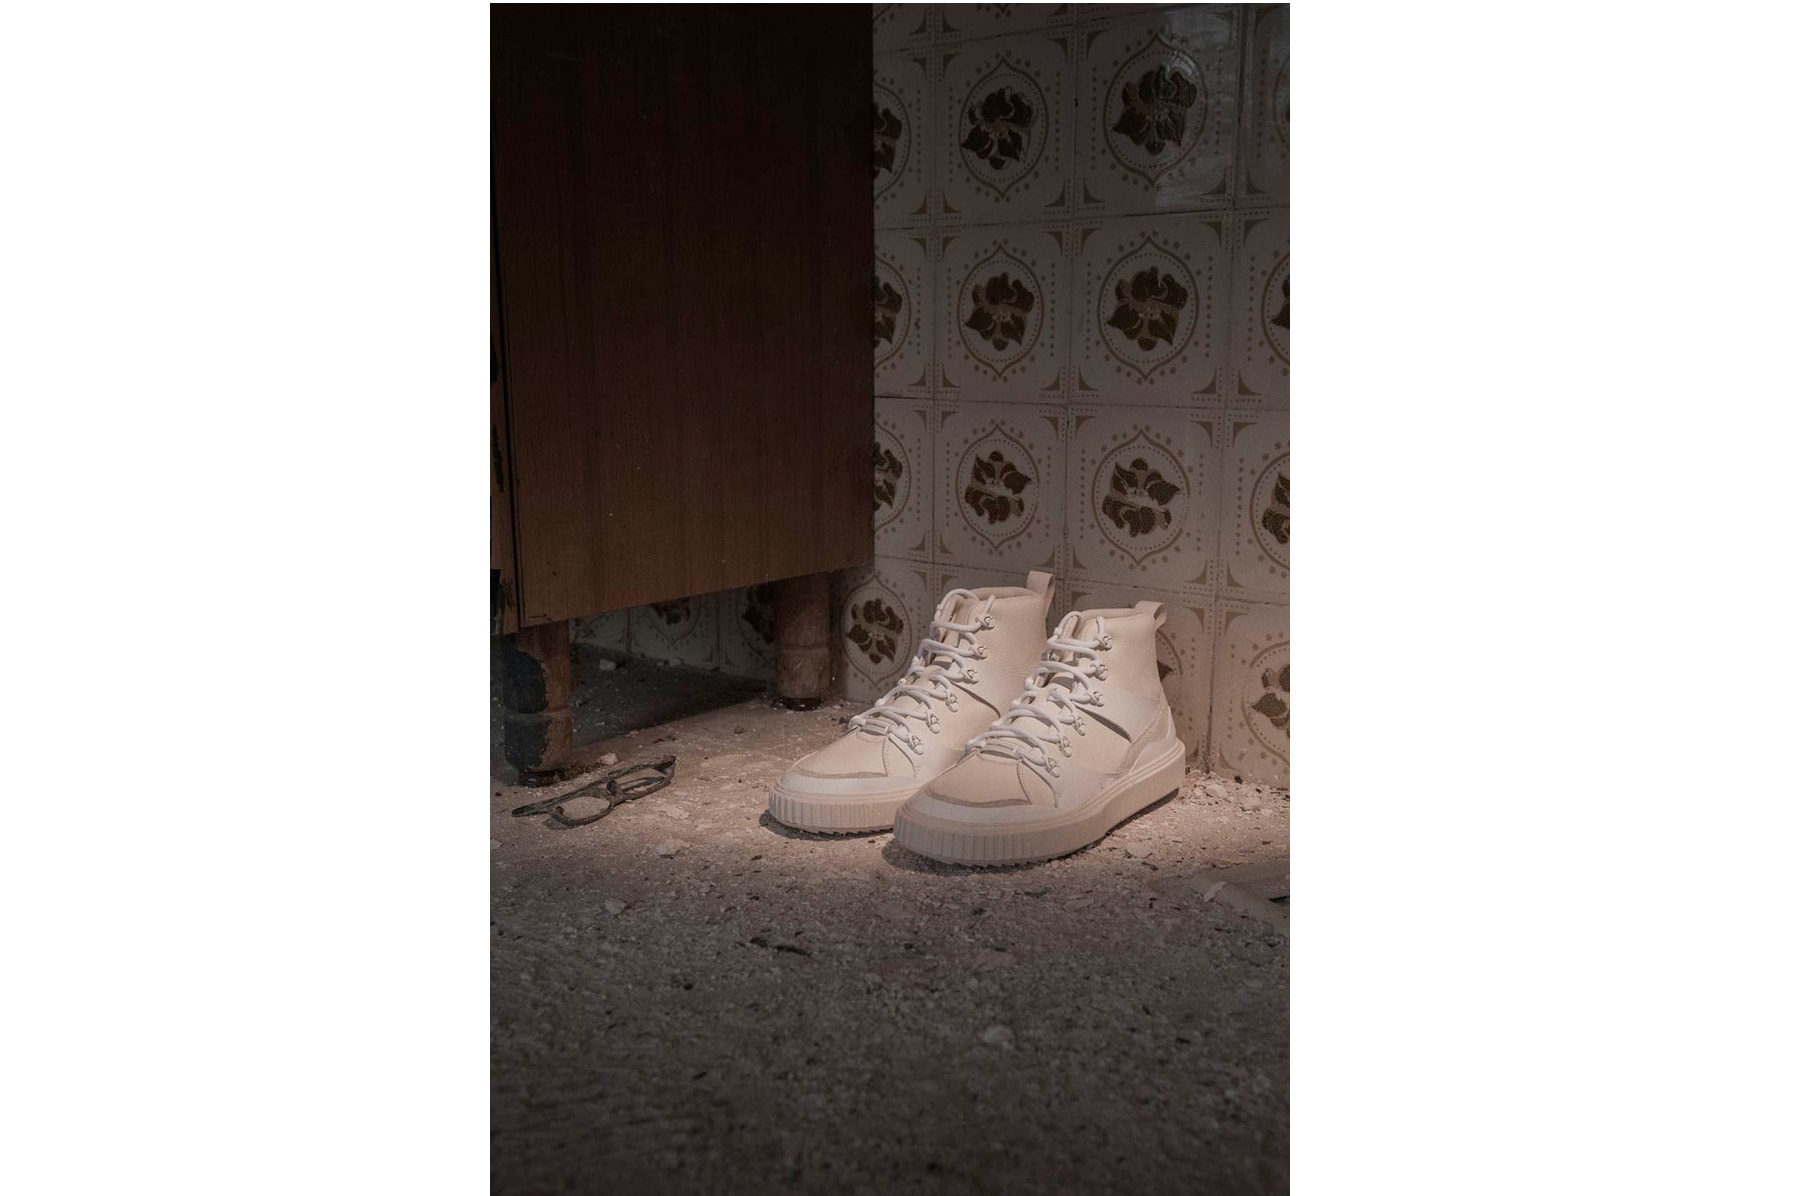 Han Kjøbenhavn x PUMA “Inside-Out” Collection release lookbook sneakers apparel jackets hats Avid HAN Breaker Mid HAN Trailfox Disc HAN Basket HAN